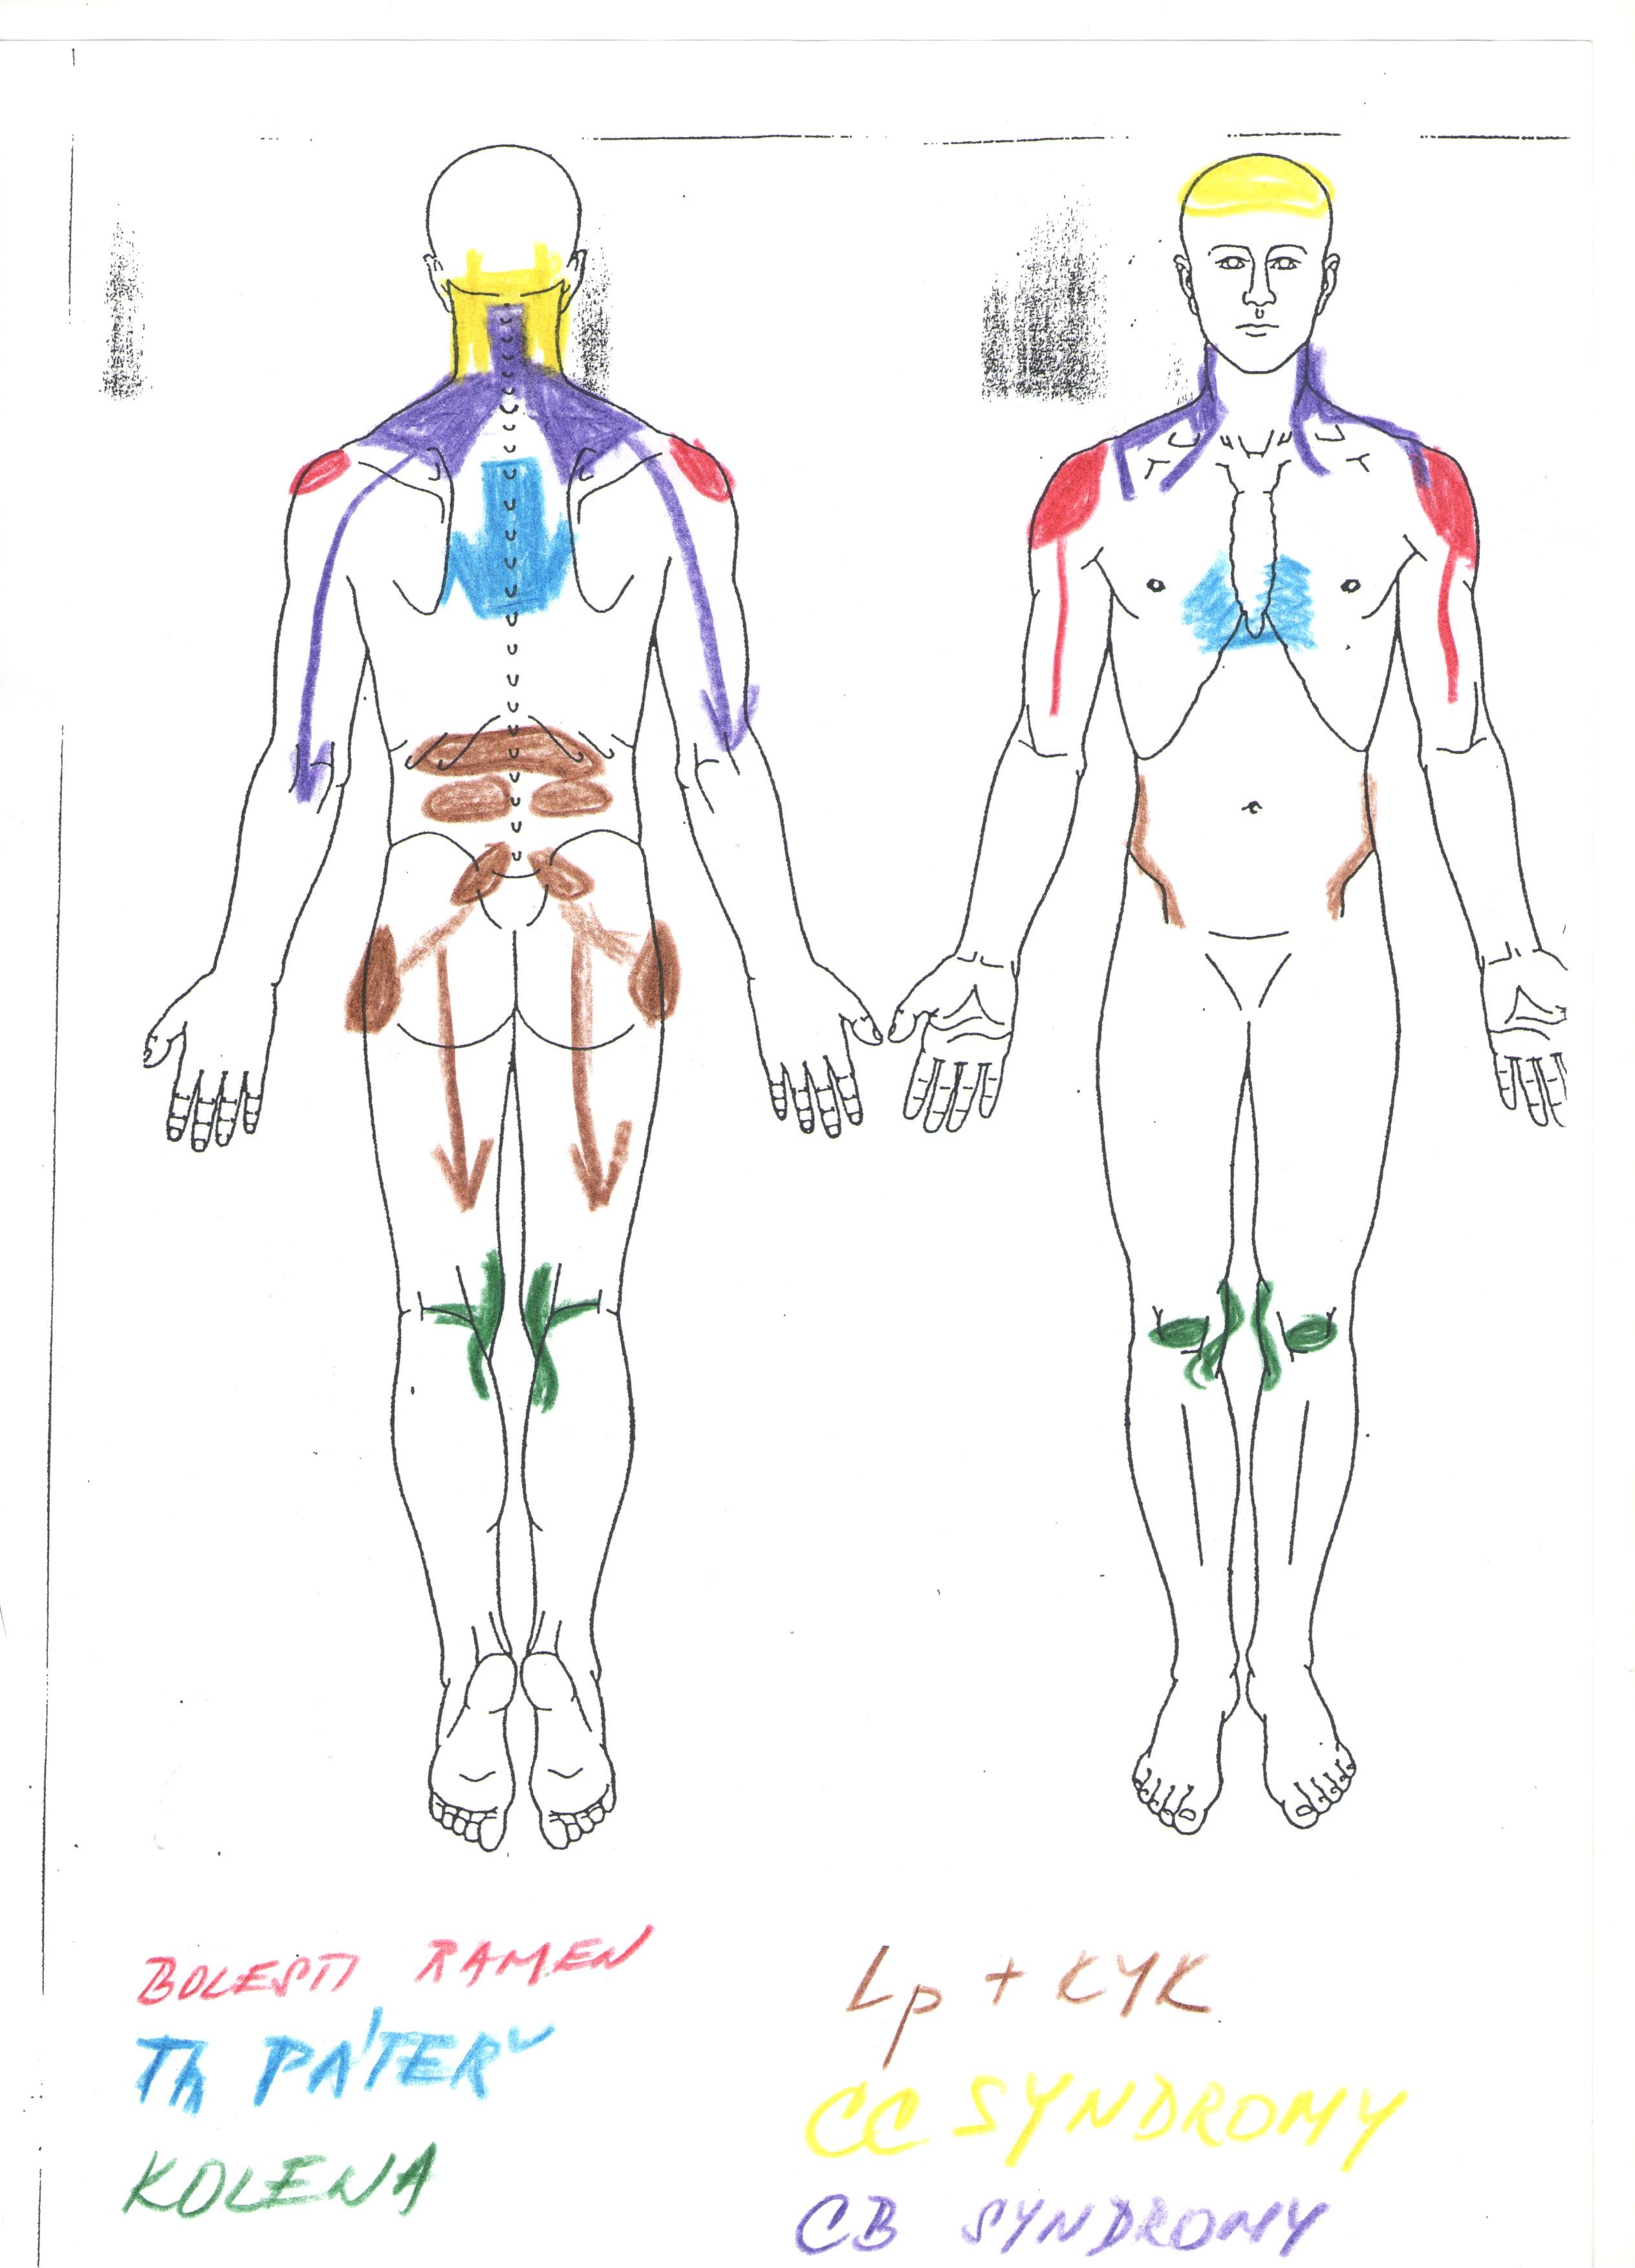 obrázek lidského těla a jeho částí